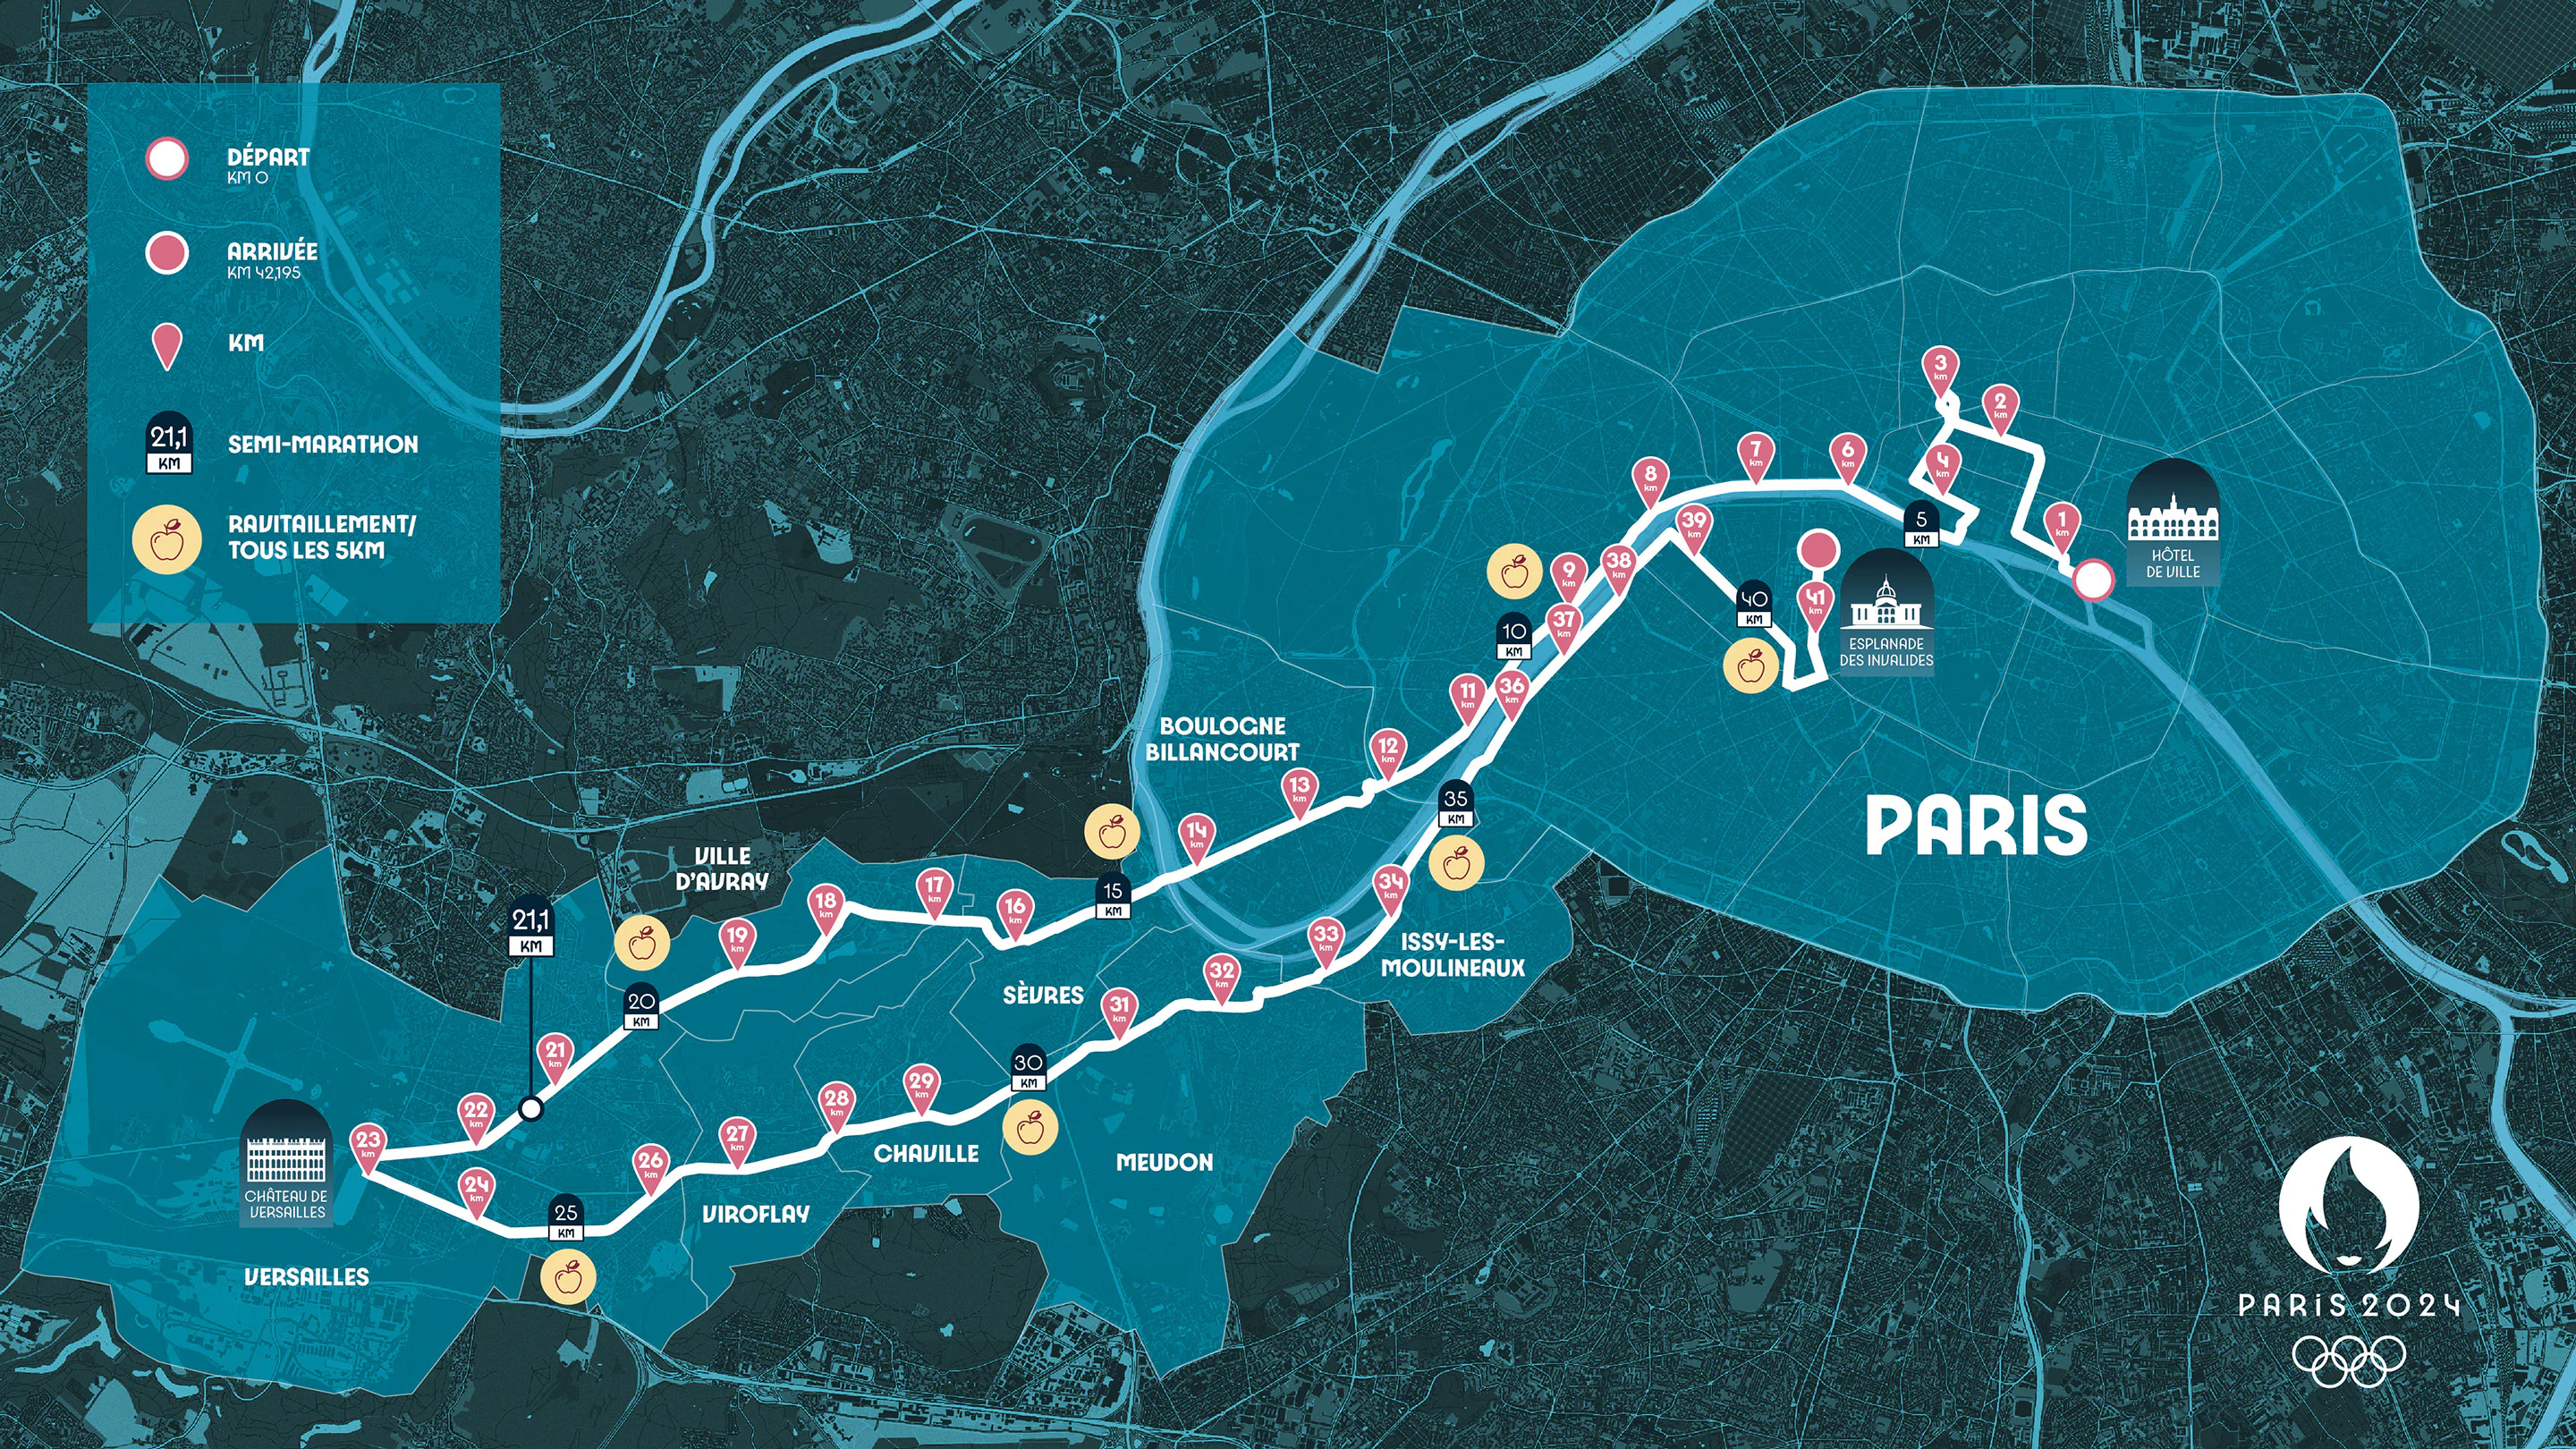 Paris 2024 reveals spectacular Olympic marathon route ICMG